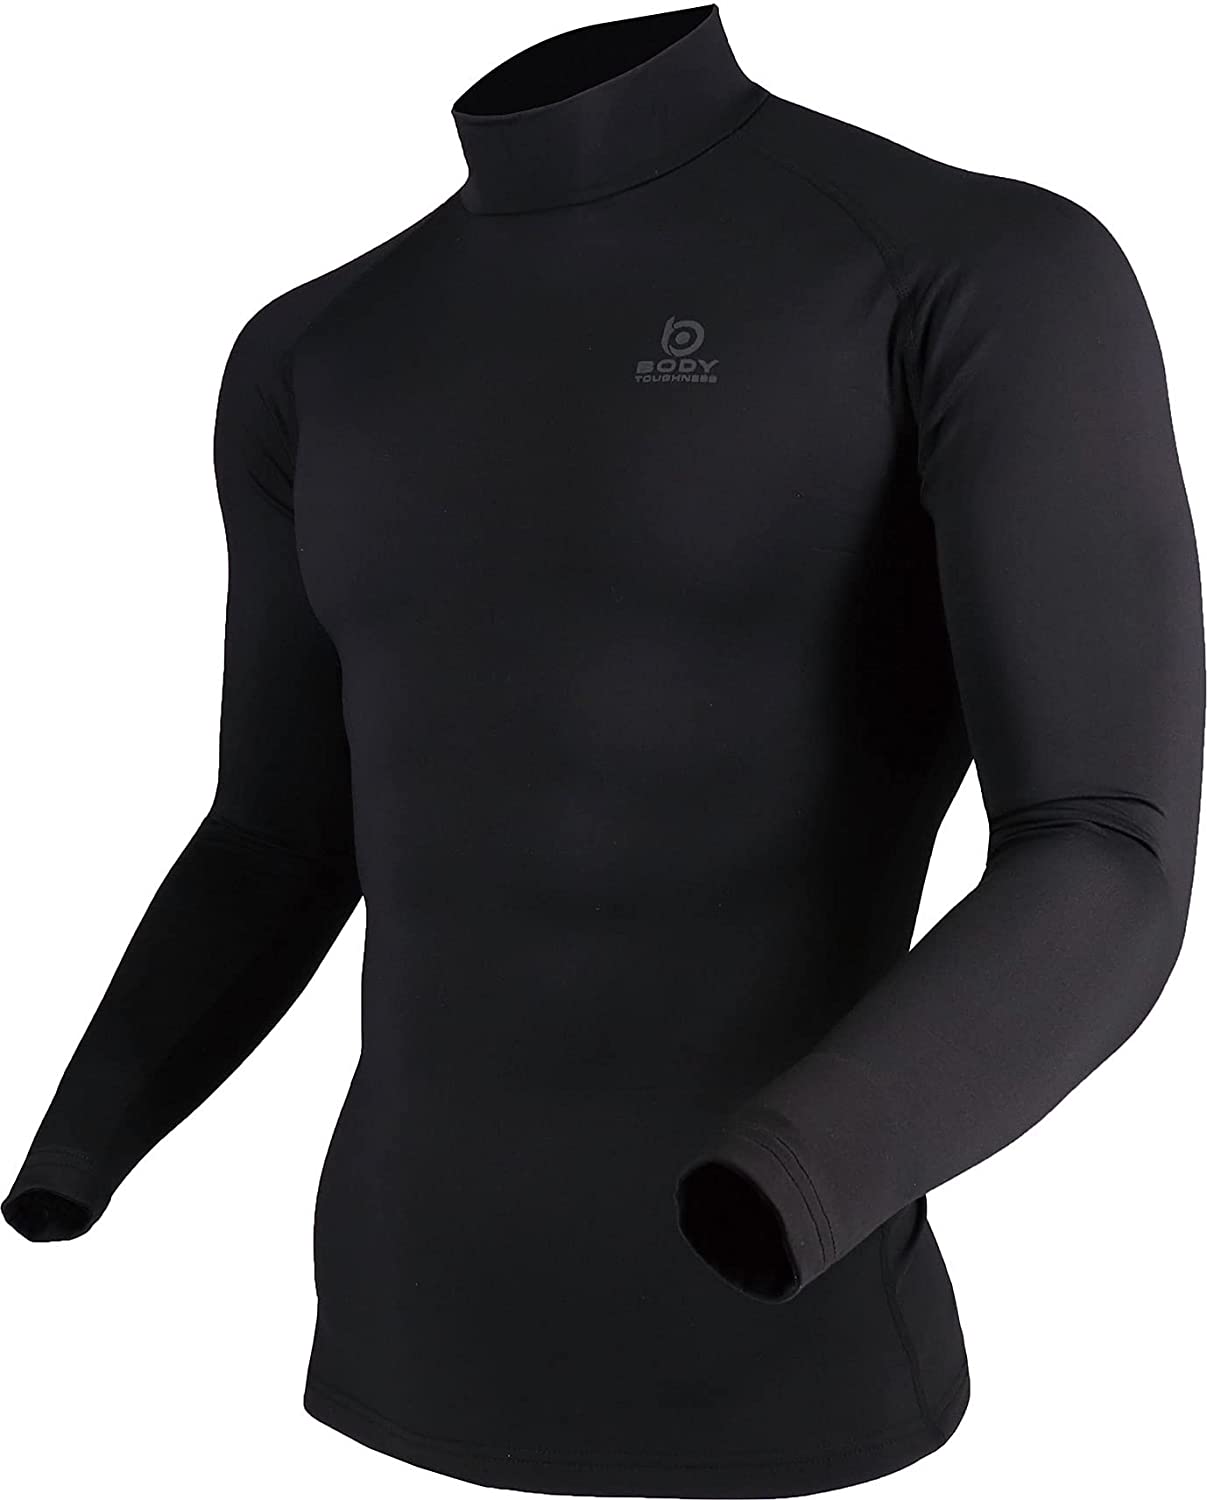 アシックス Be-Body 肩バランスアップアンダーシャツ 肩甲骨サポート 黒エクササイズ